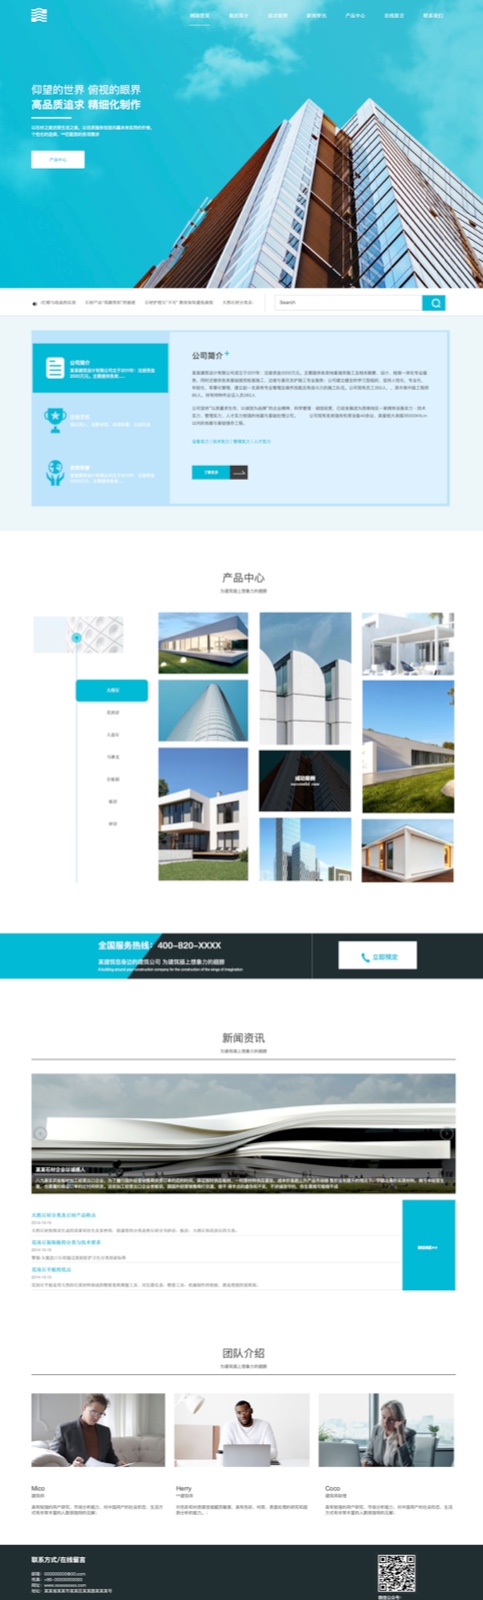 建筑、建材网站模板-architecture-1122483